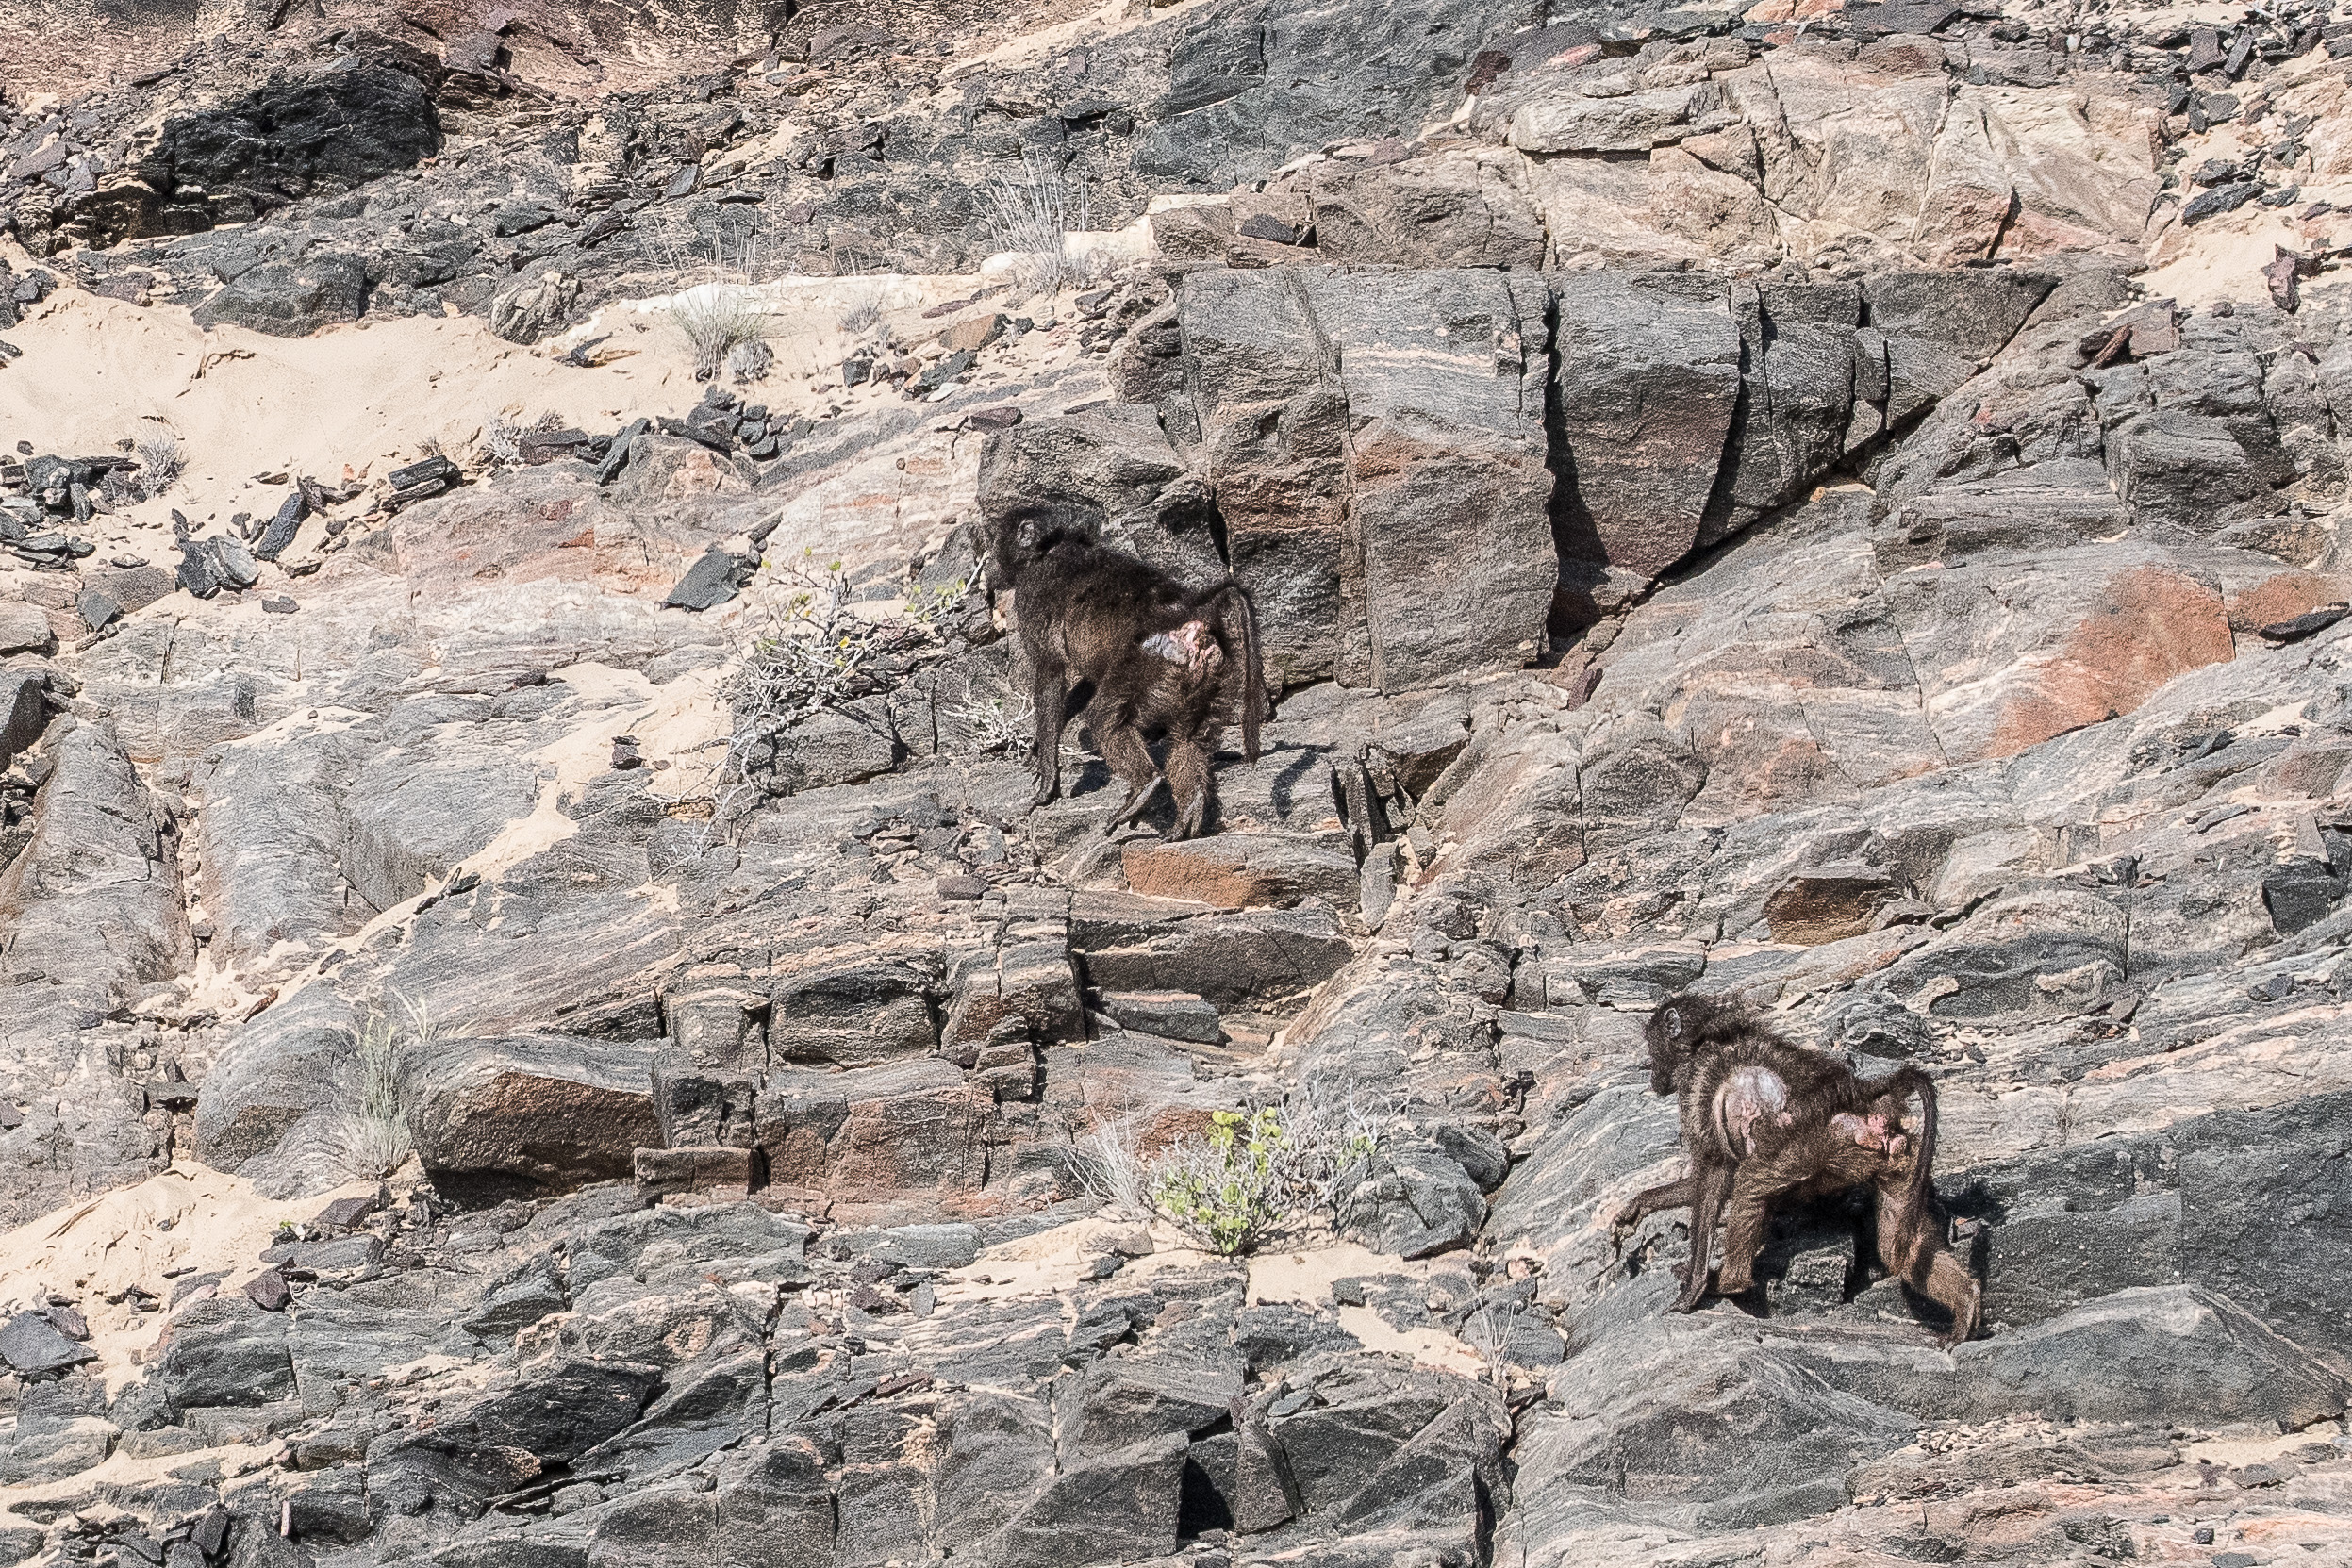 Chacmas (Chacma baboons, Papio ursinus), adultes escaladant une falaise en vue d'y rechercher des oeufs ou d'y passer la nuit,  Vallée de l'Hoarusib, Parc National de la Côte des squelettes, Namibie.